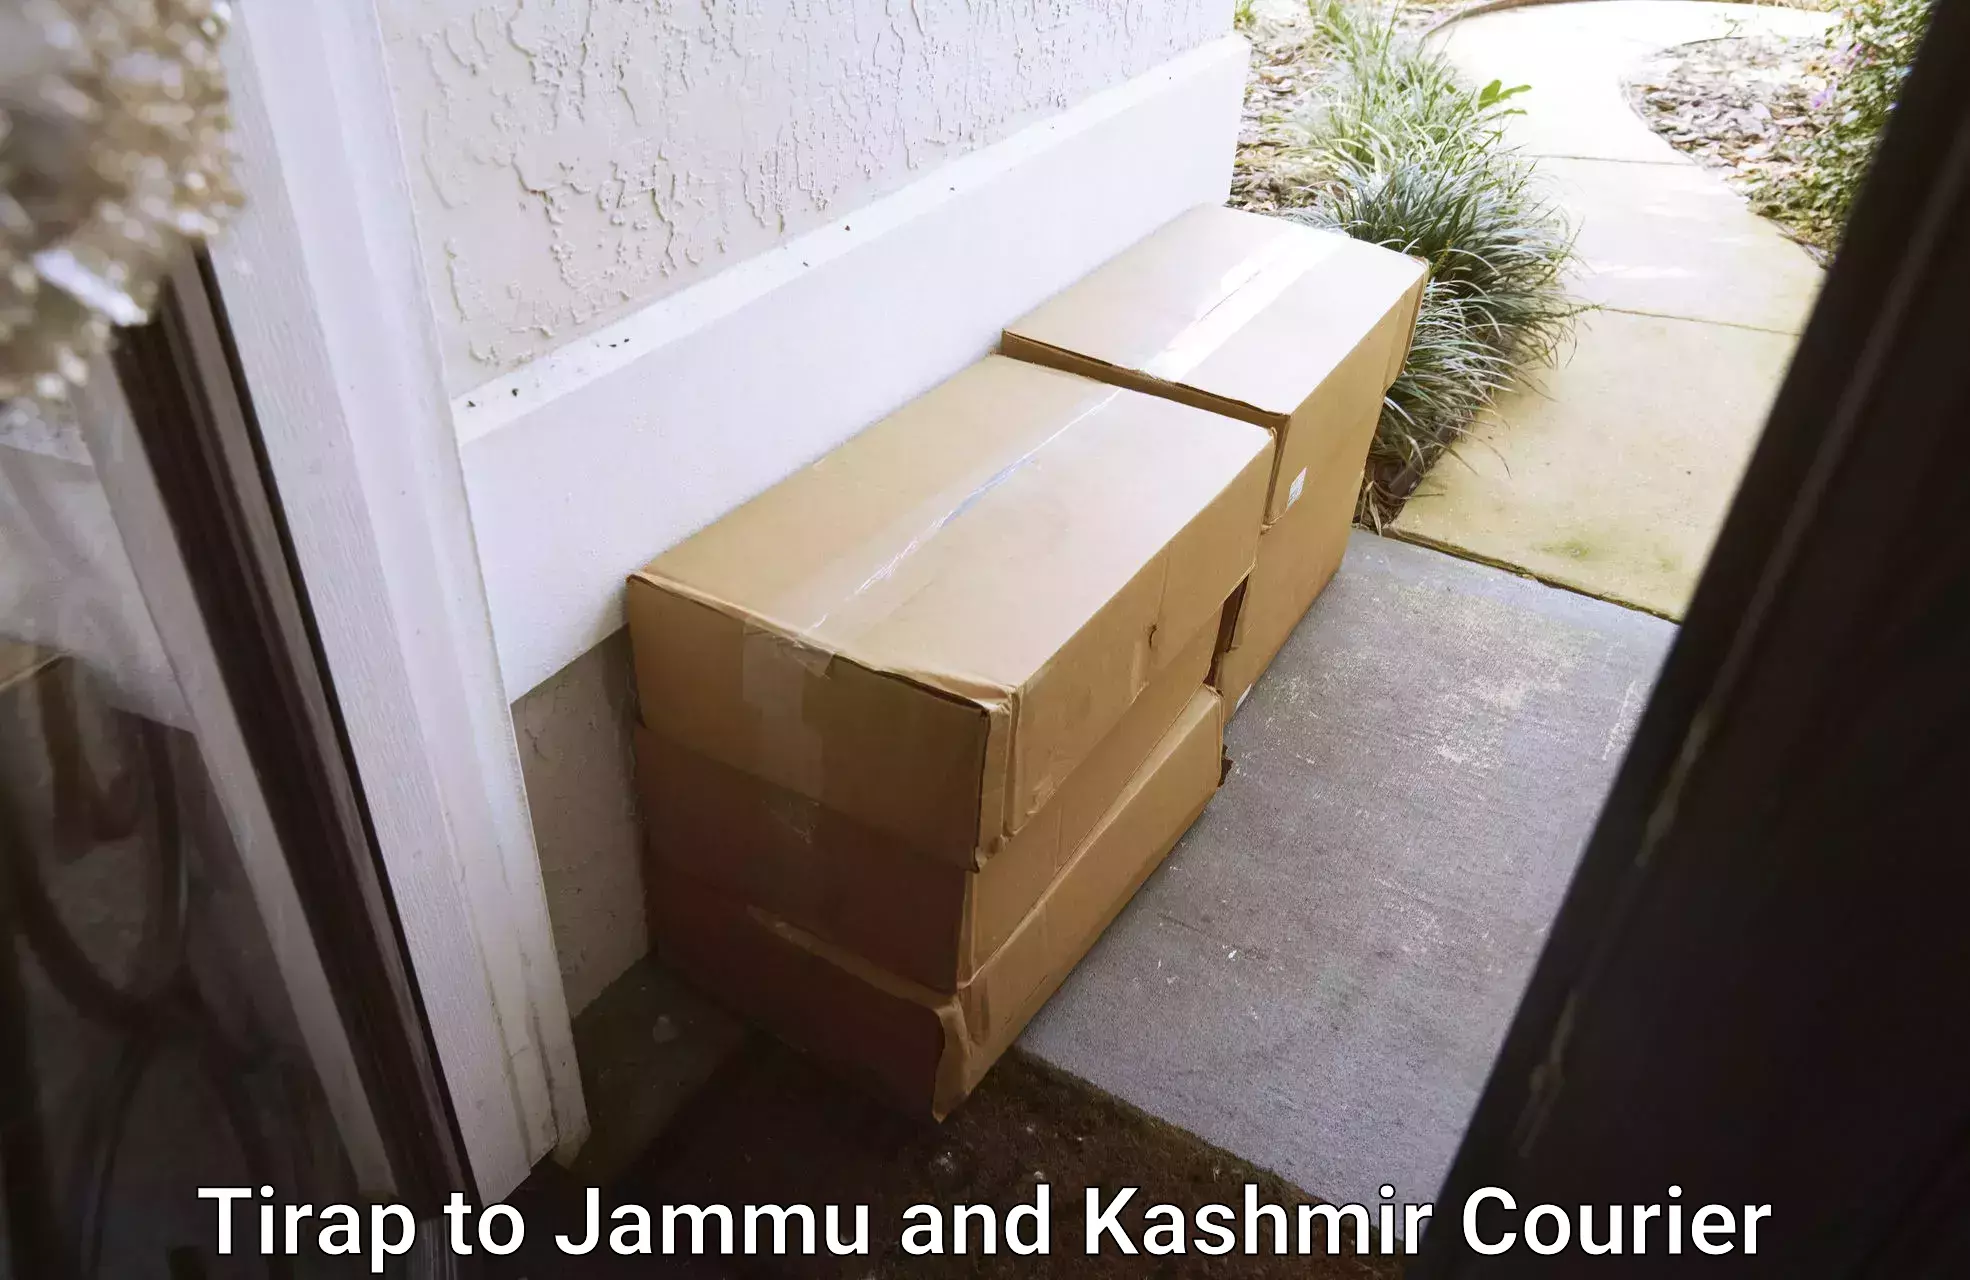 Customer-centric shipping Tirap to Jammu and Kashmir